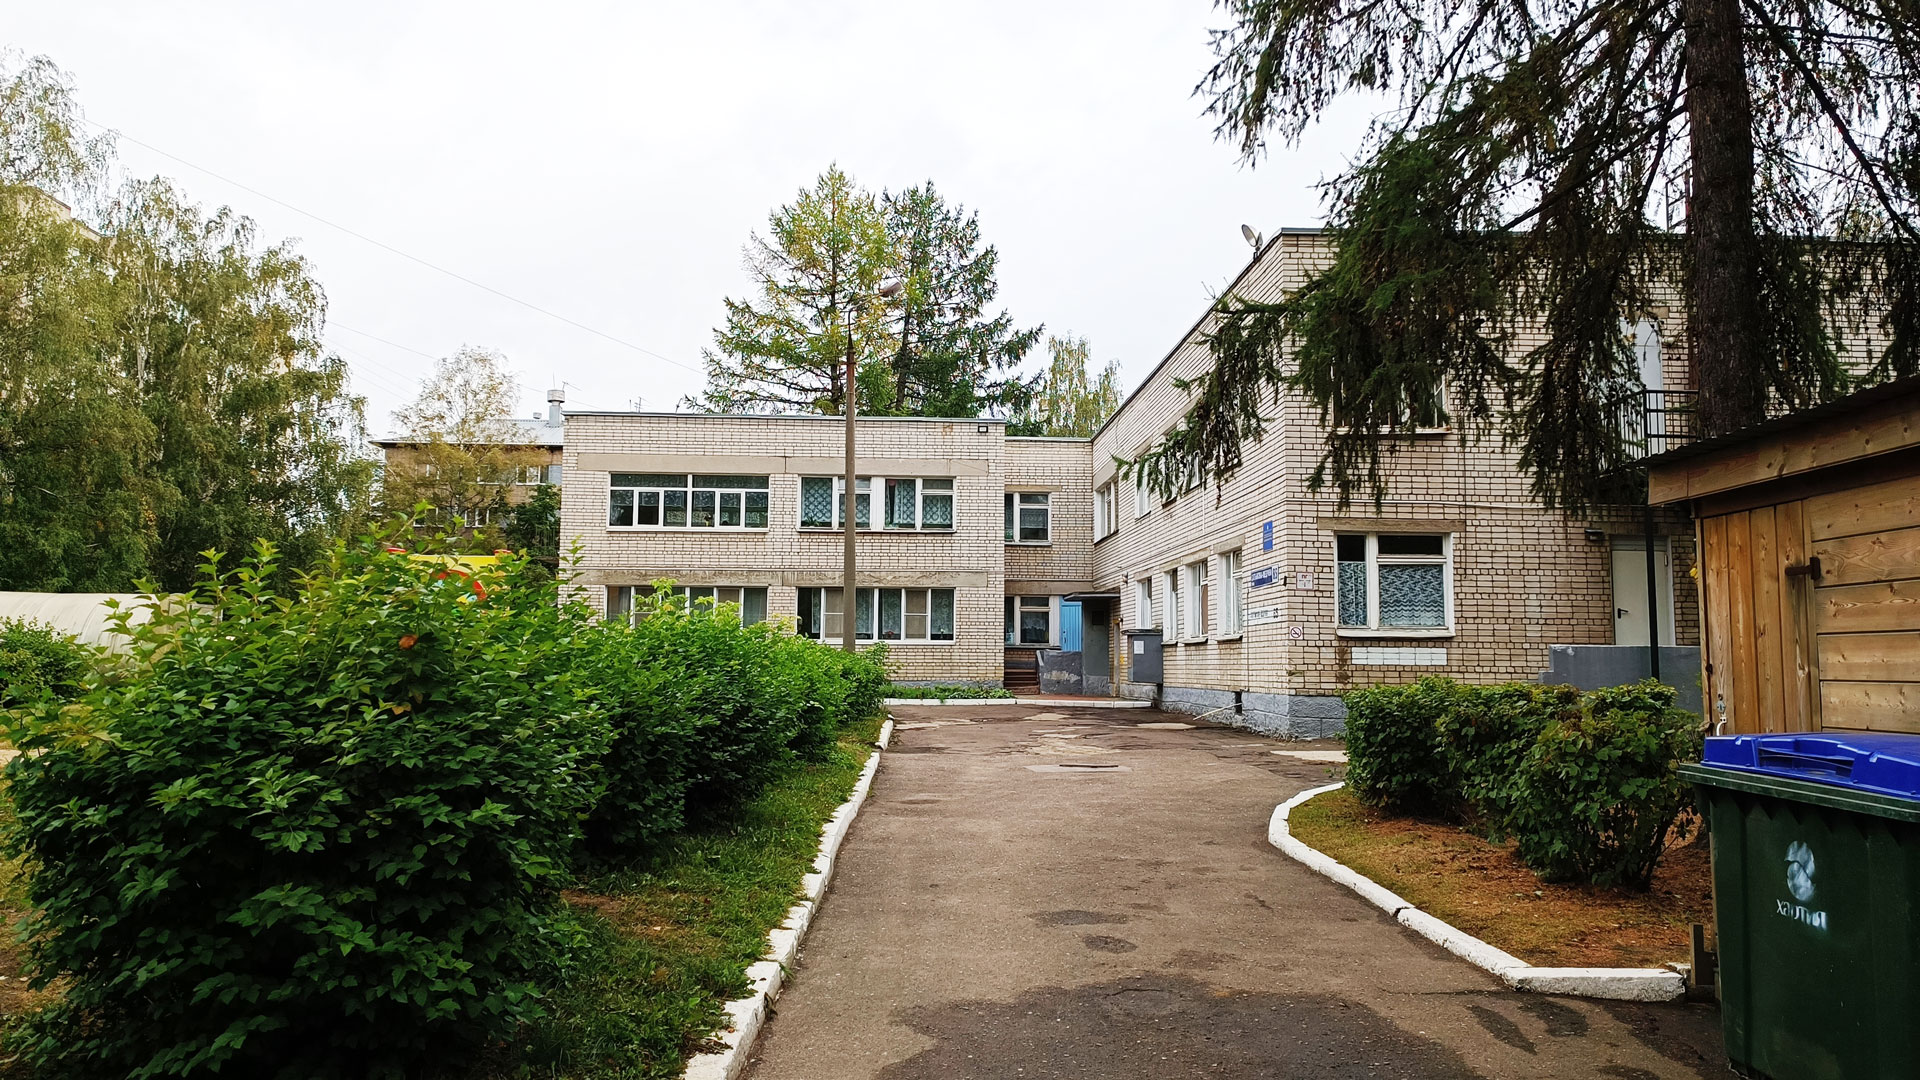 Детский сад 234 Ярославль: общий вид здания и территории.